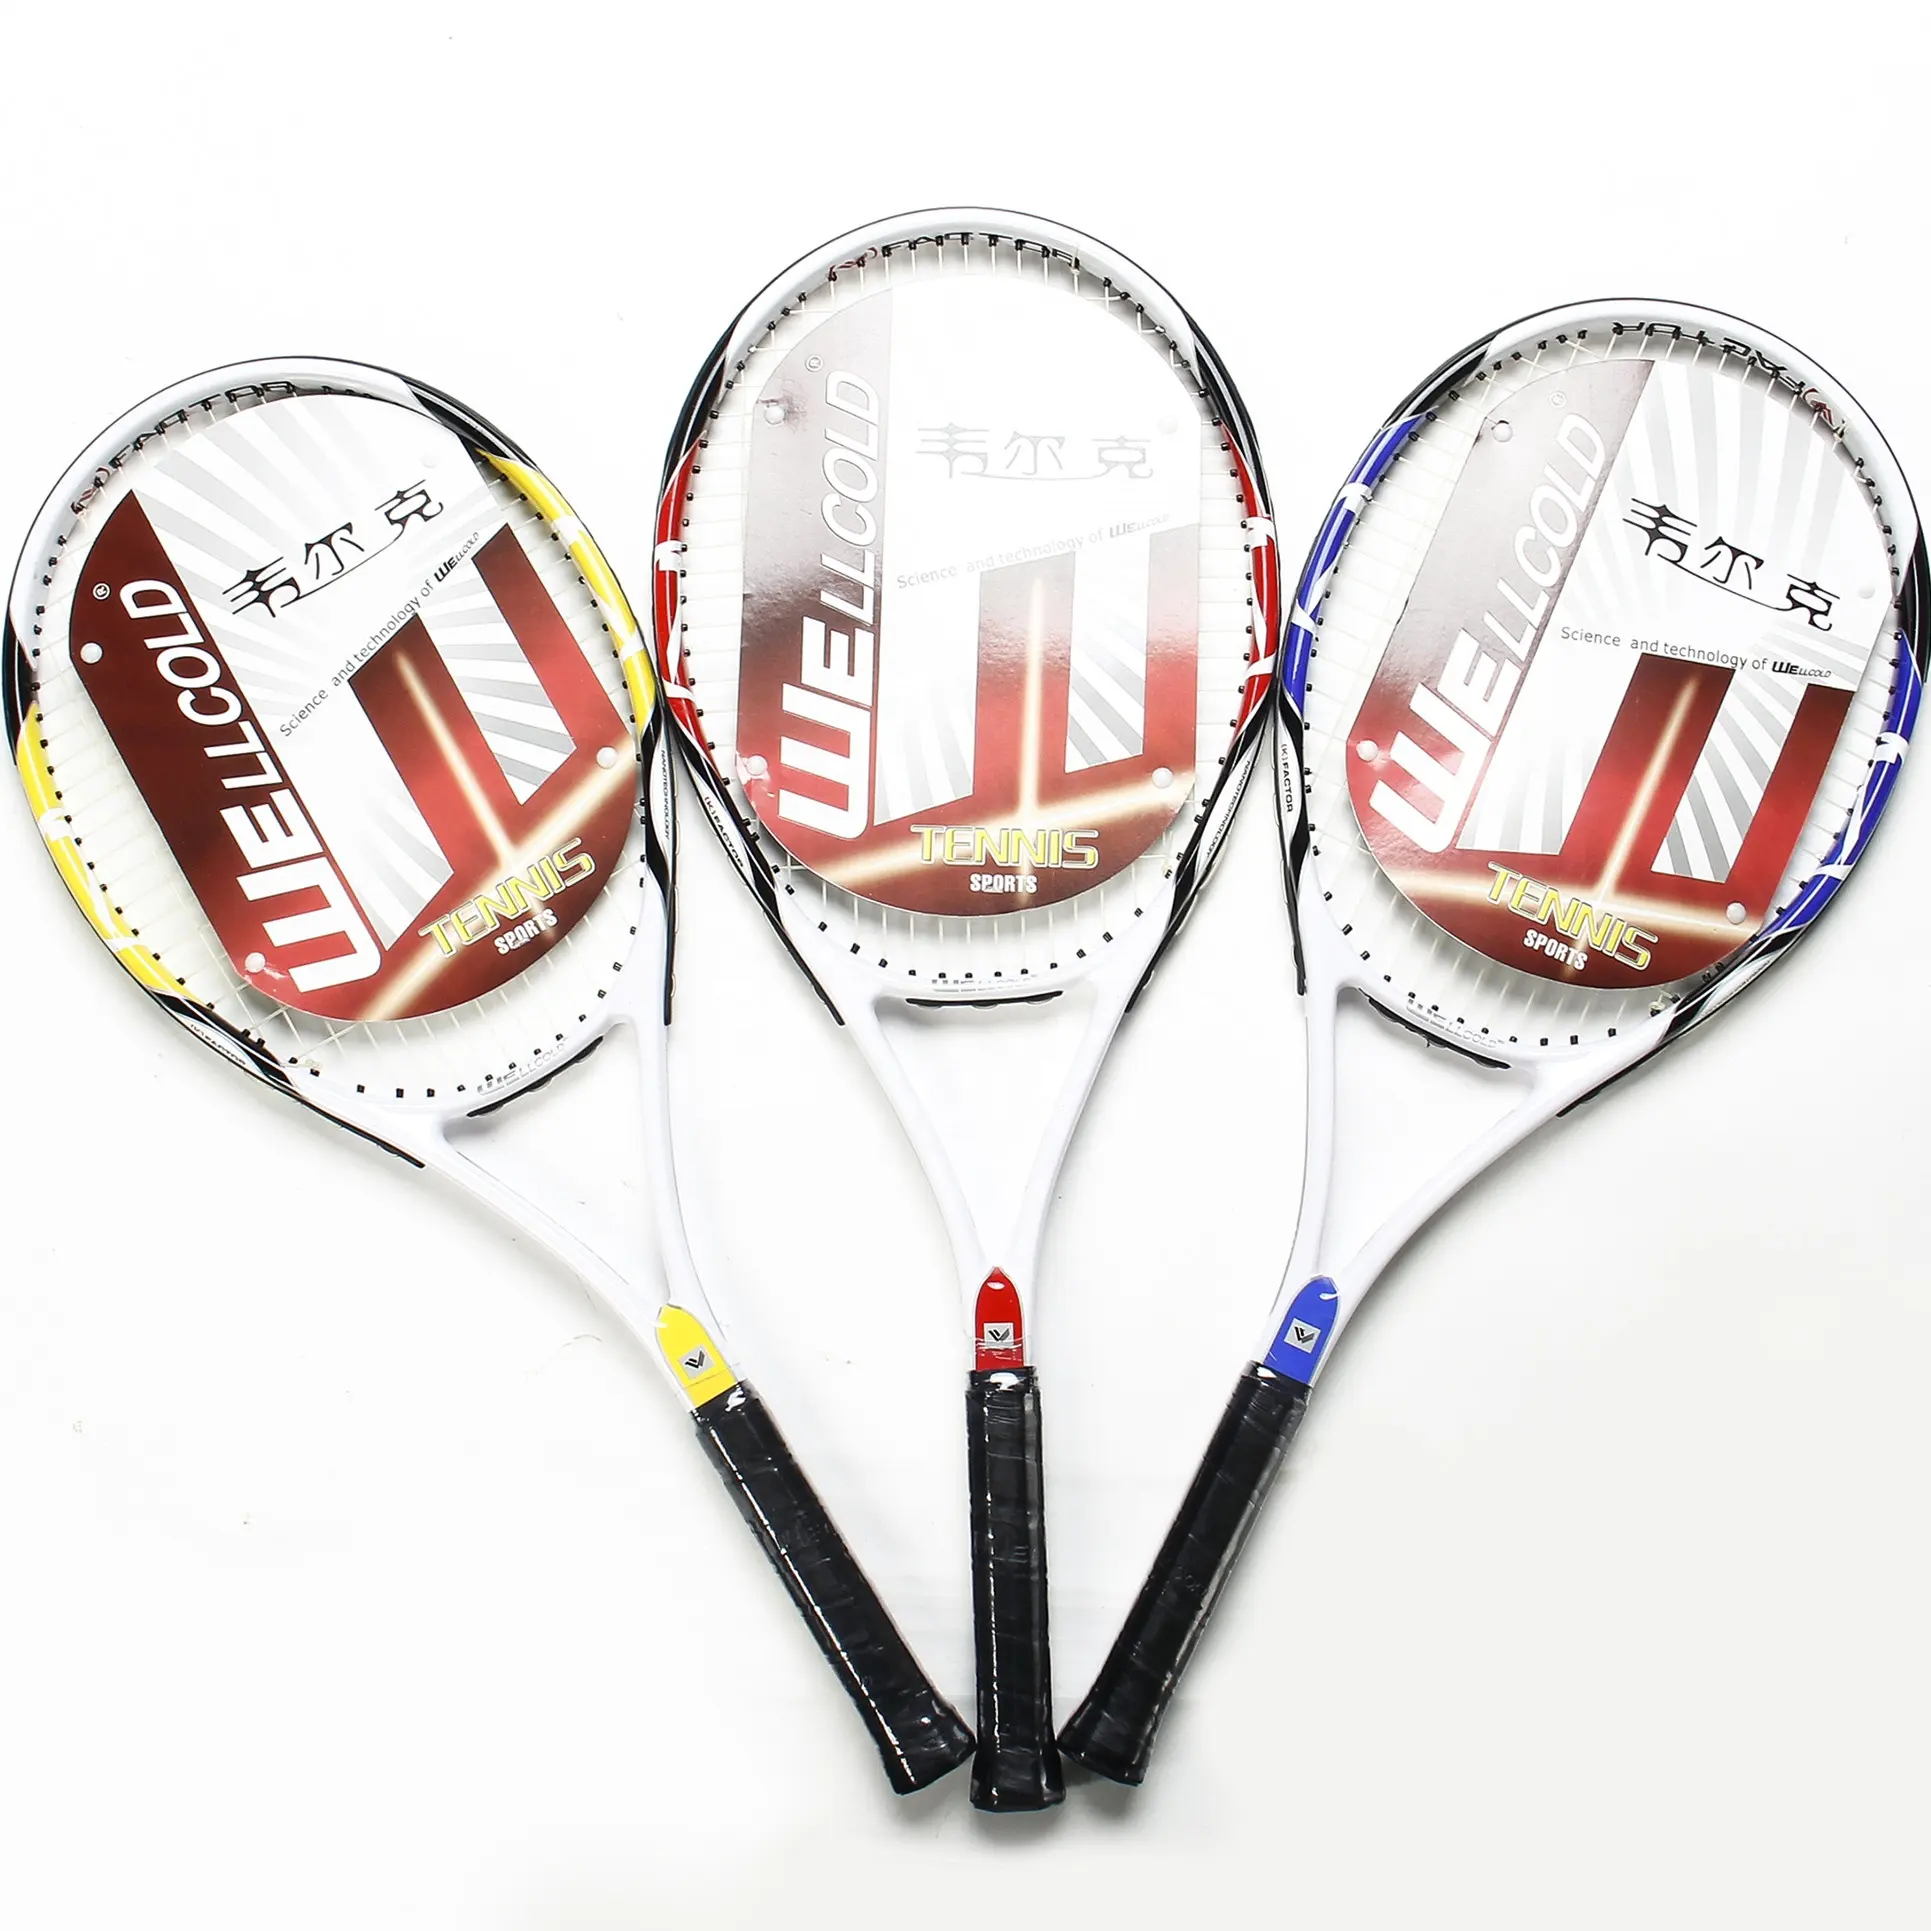 Goede leverancier china tennisracket merk, professionele overgrip raquete tennis van fabricage